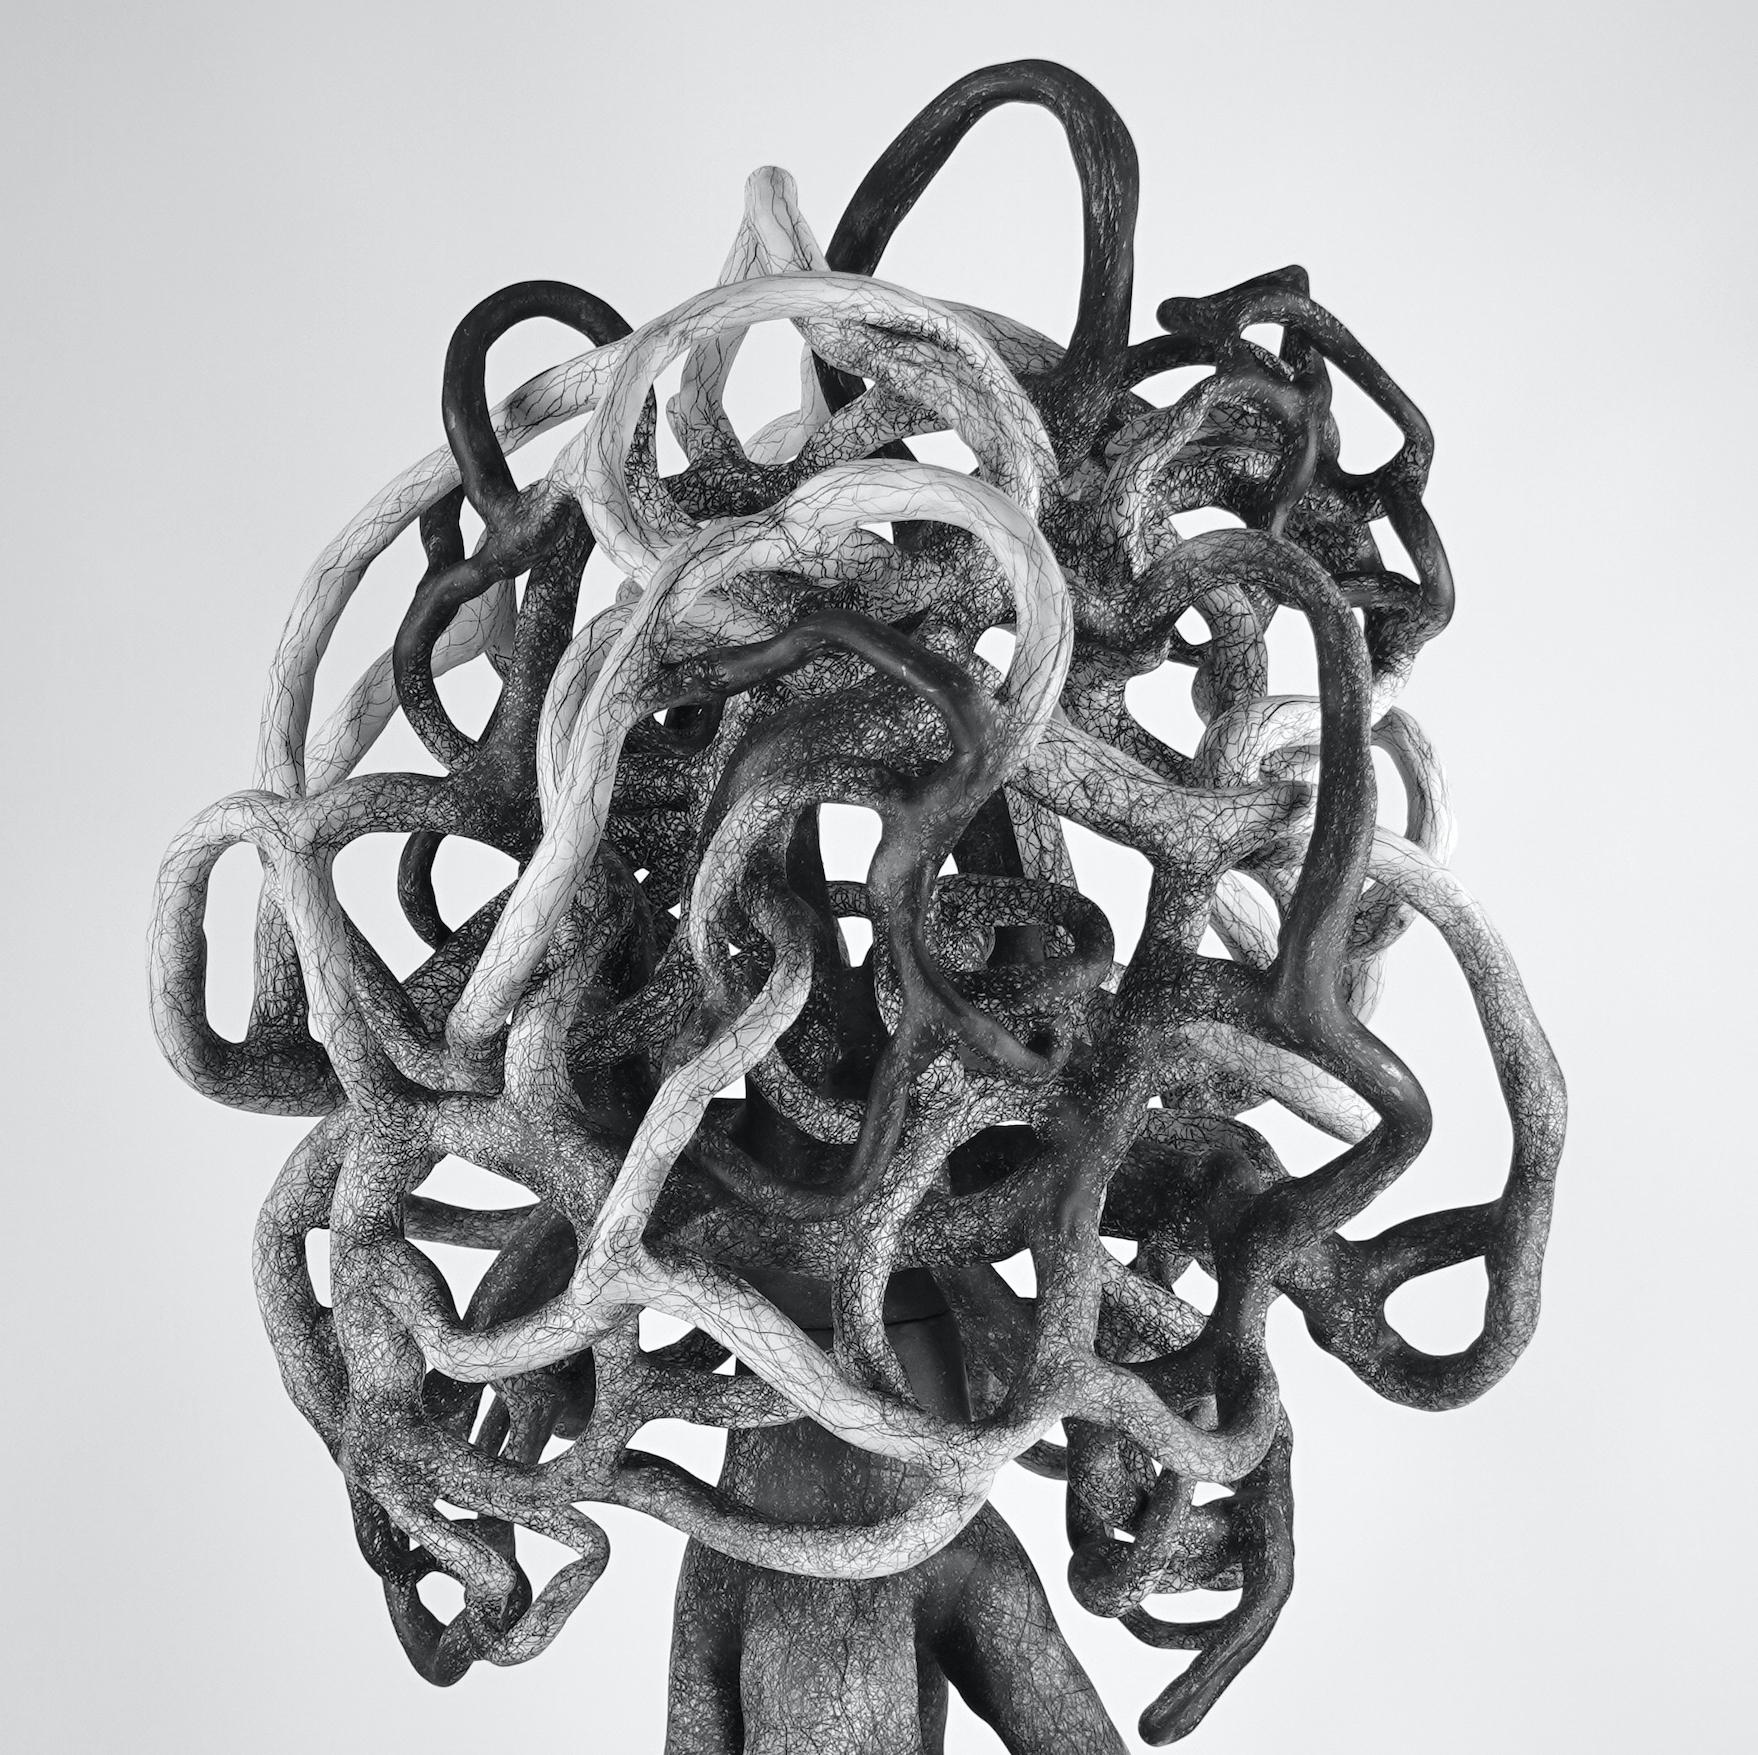 Judi Tavill( NJ) crée une abstraction biomorphique associant la sculpture et le dessin qui fait référence à l'expérience complexe de la connexion et de l'enchevêtrement.
Après avoir obtenu sa licence à l'université Washington de Saint Louis, Tavill